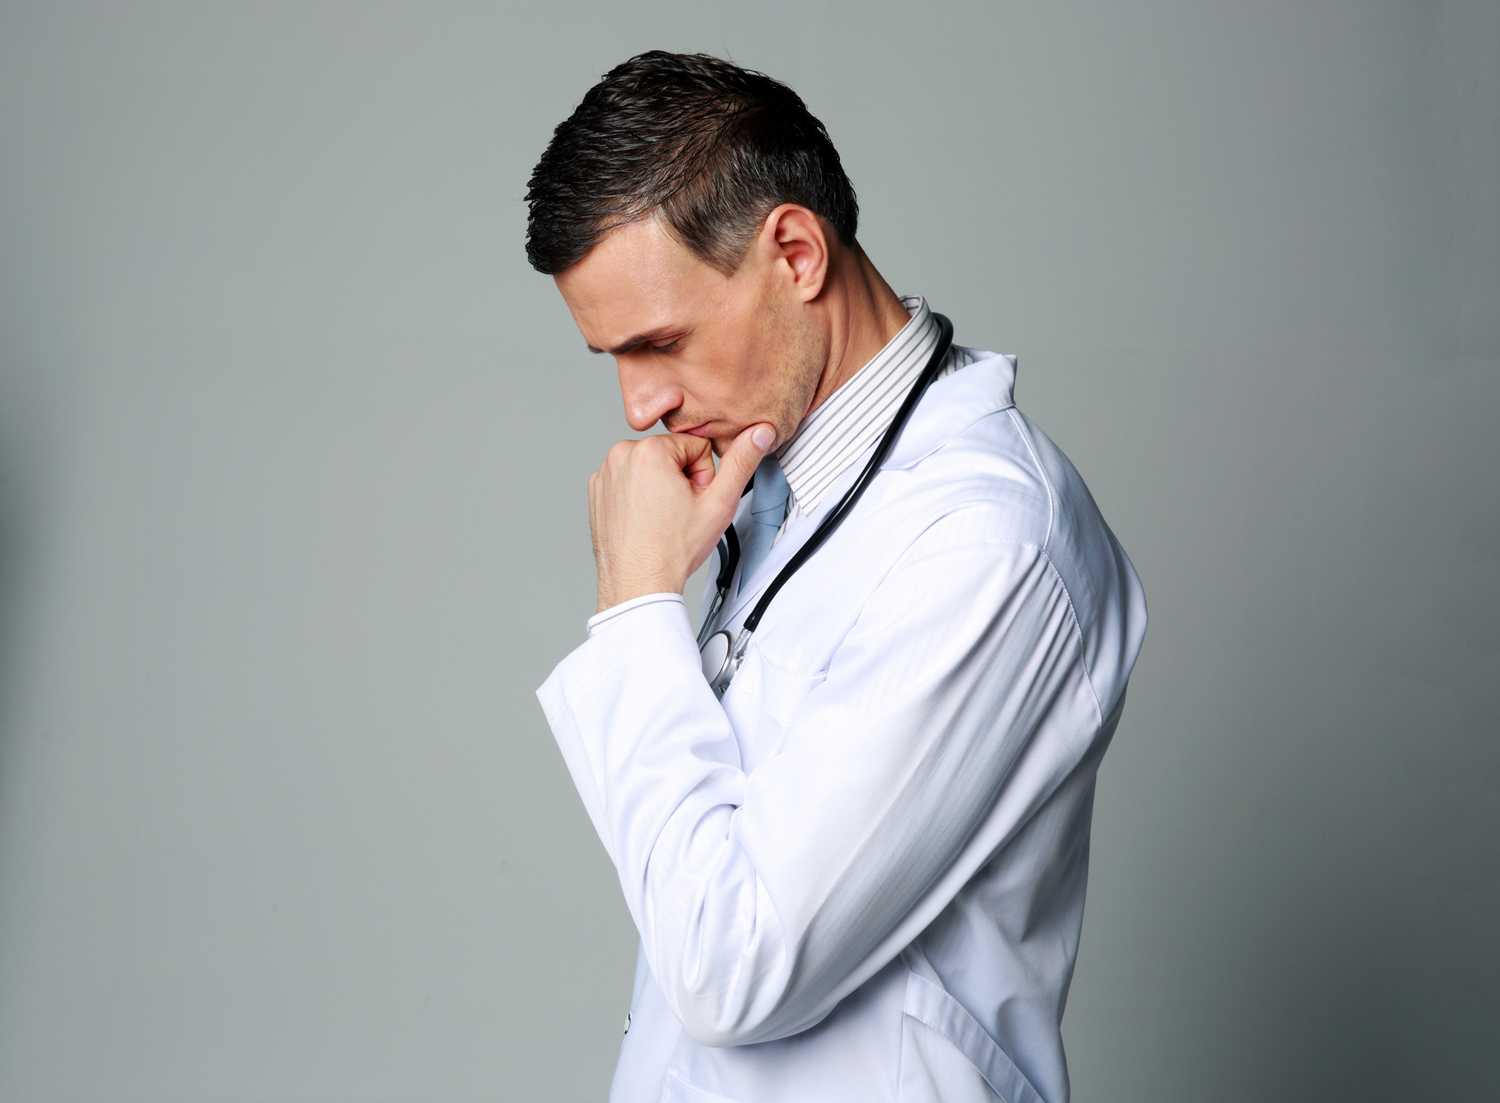 Ärztinnen und Ärzte leiden etwa vier Mal häufiger an Belastungsstörungen als die Allgemeinbevölkerung.